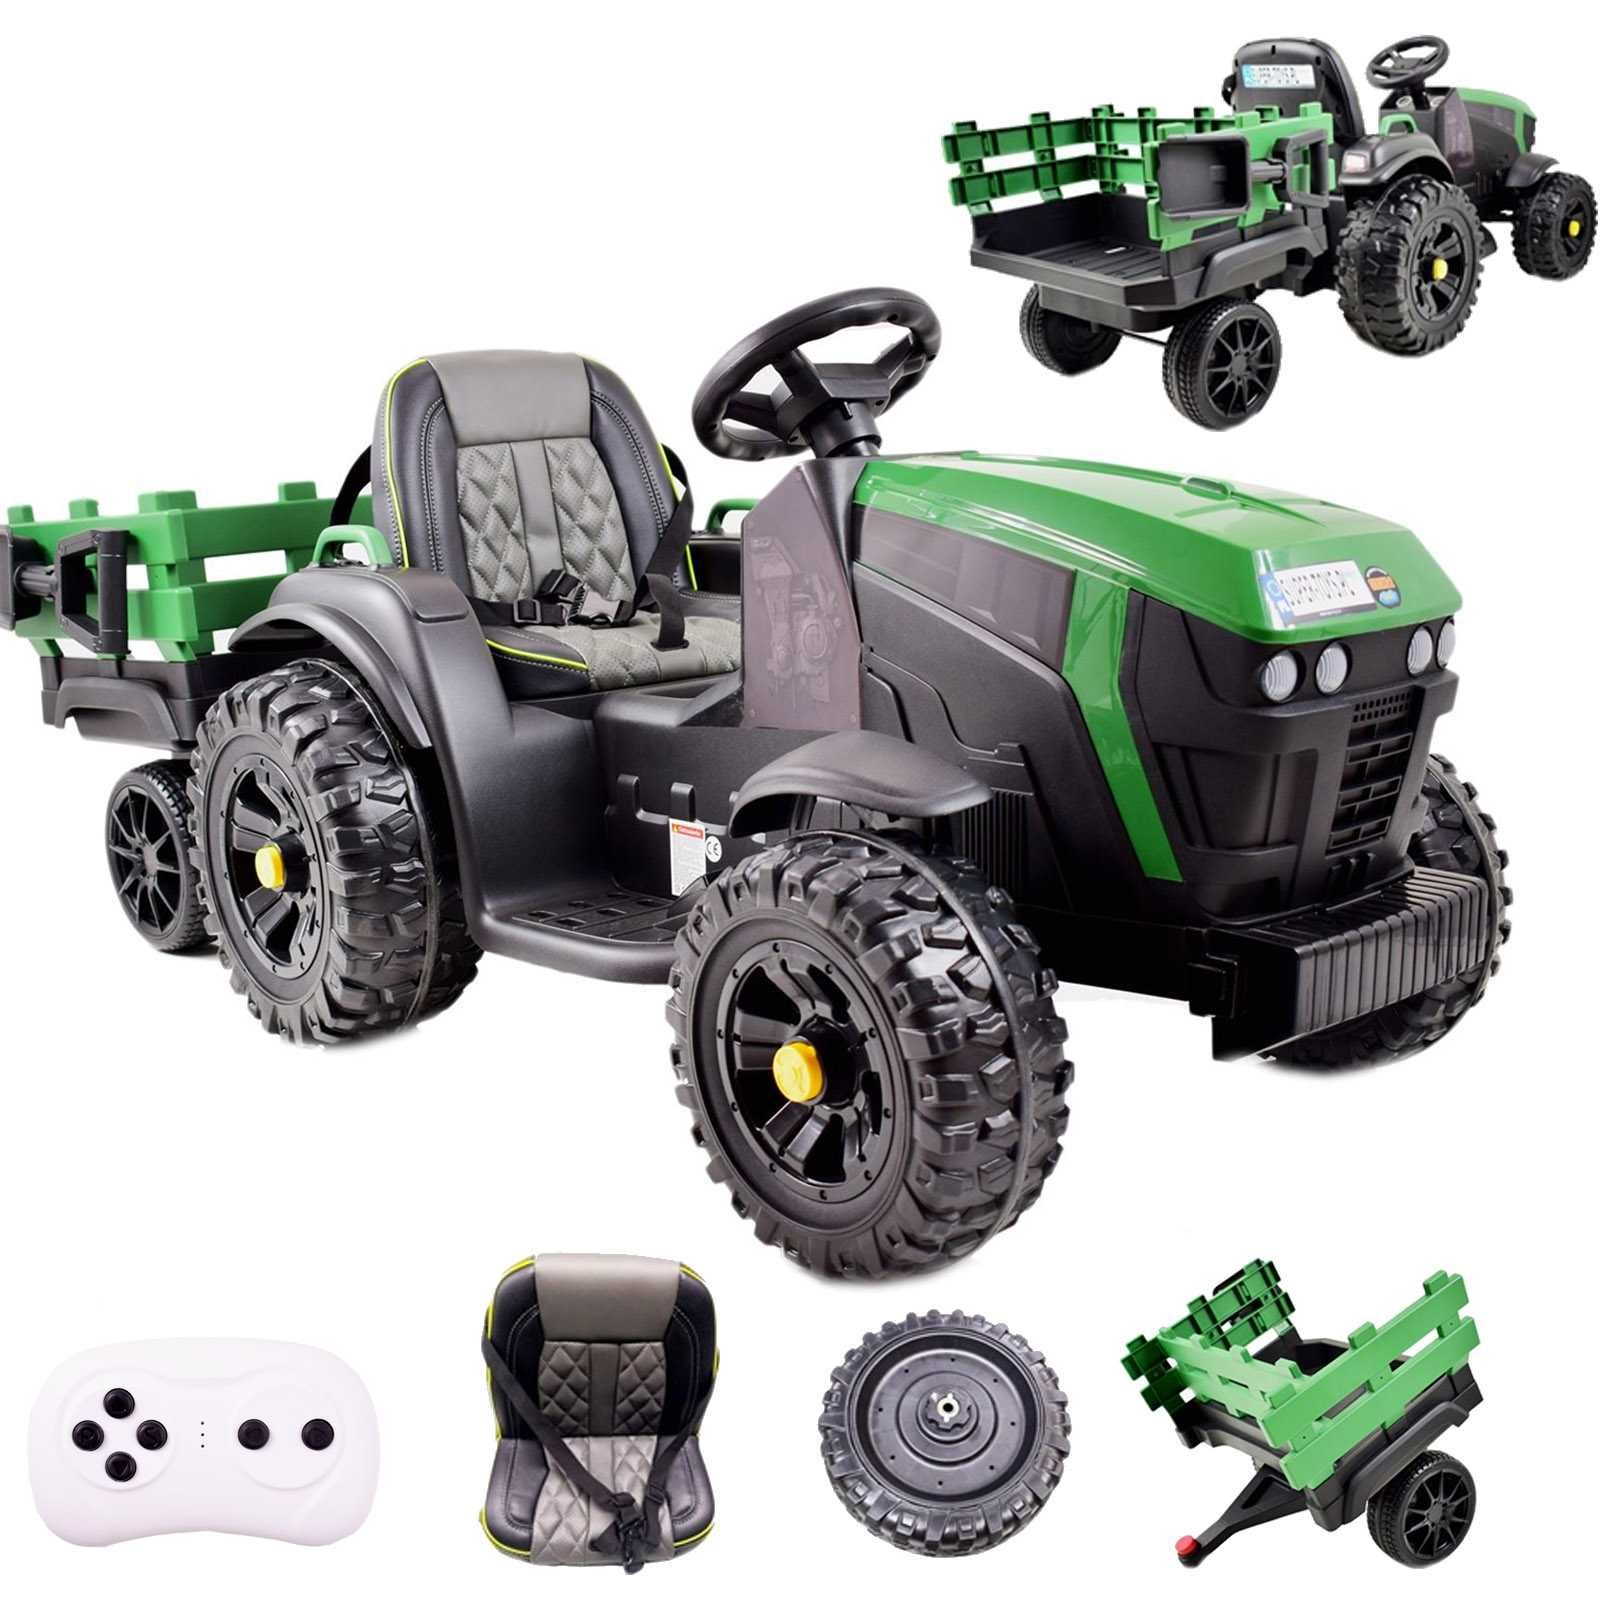 Super traktorek ciągnik na akumulator dla dziecka BDM 0925